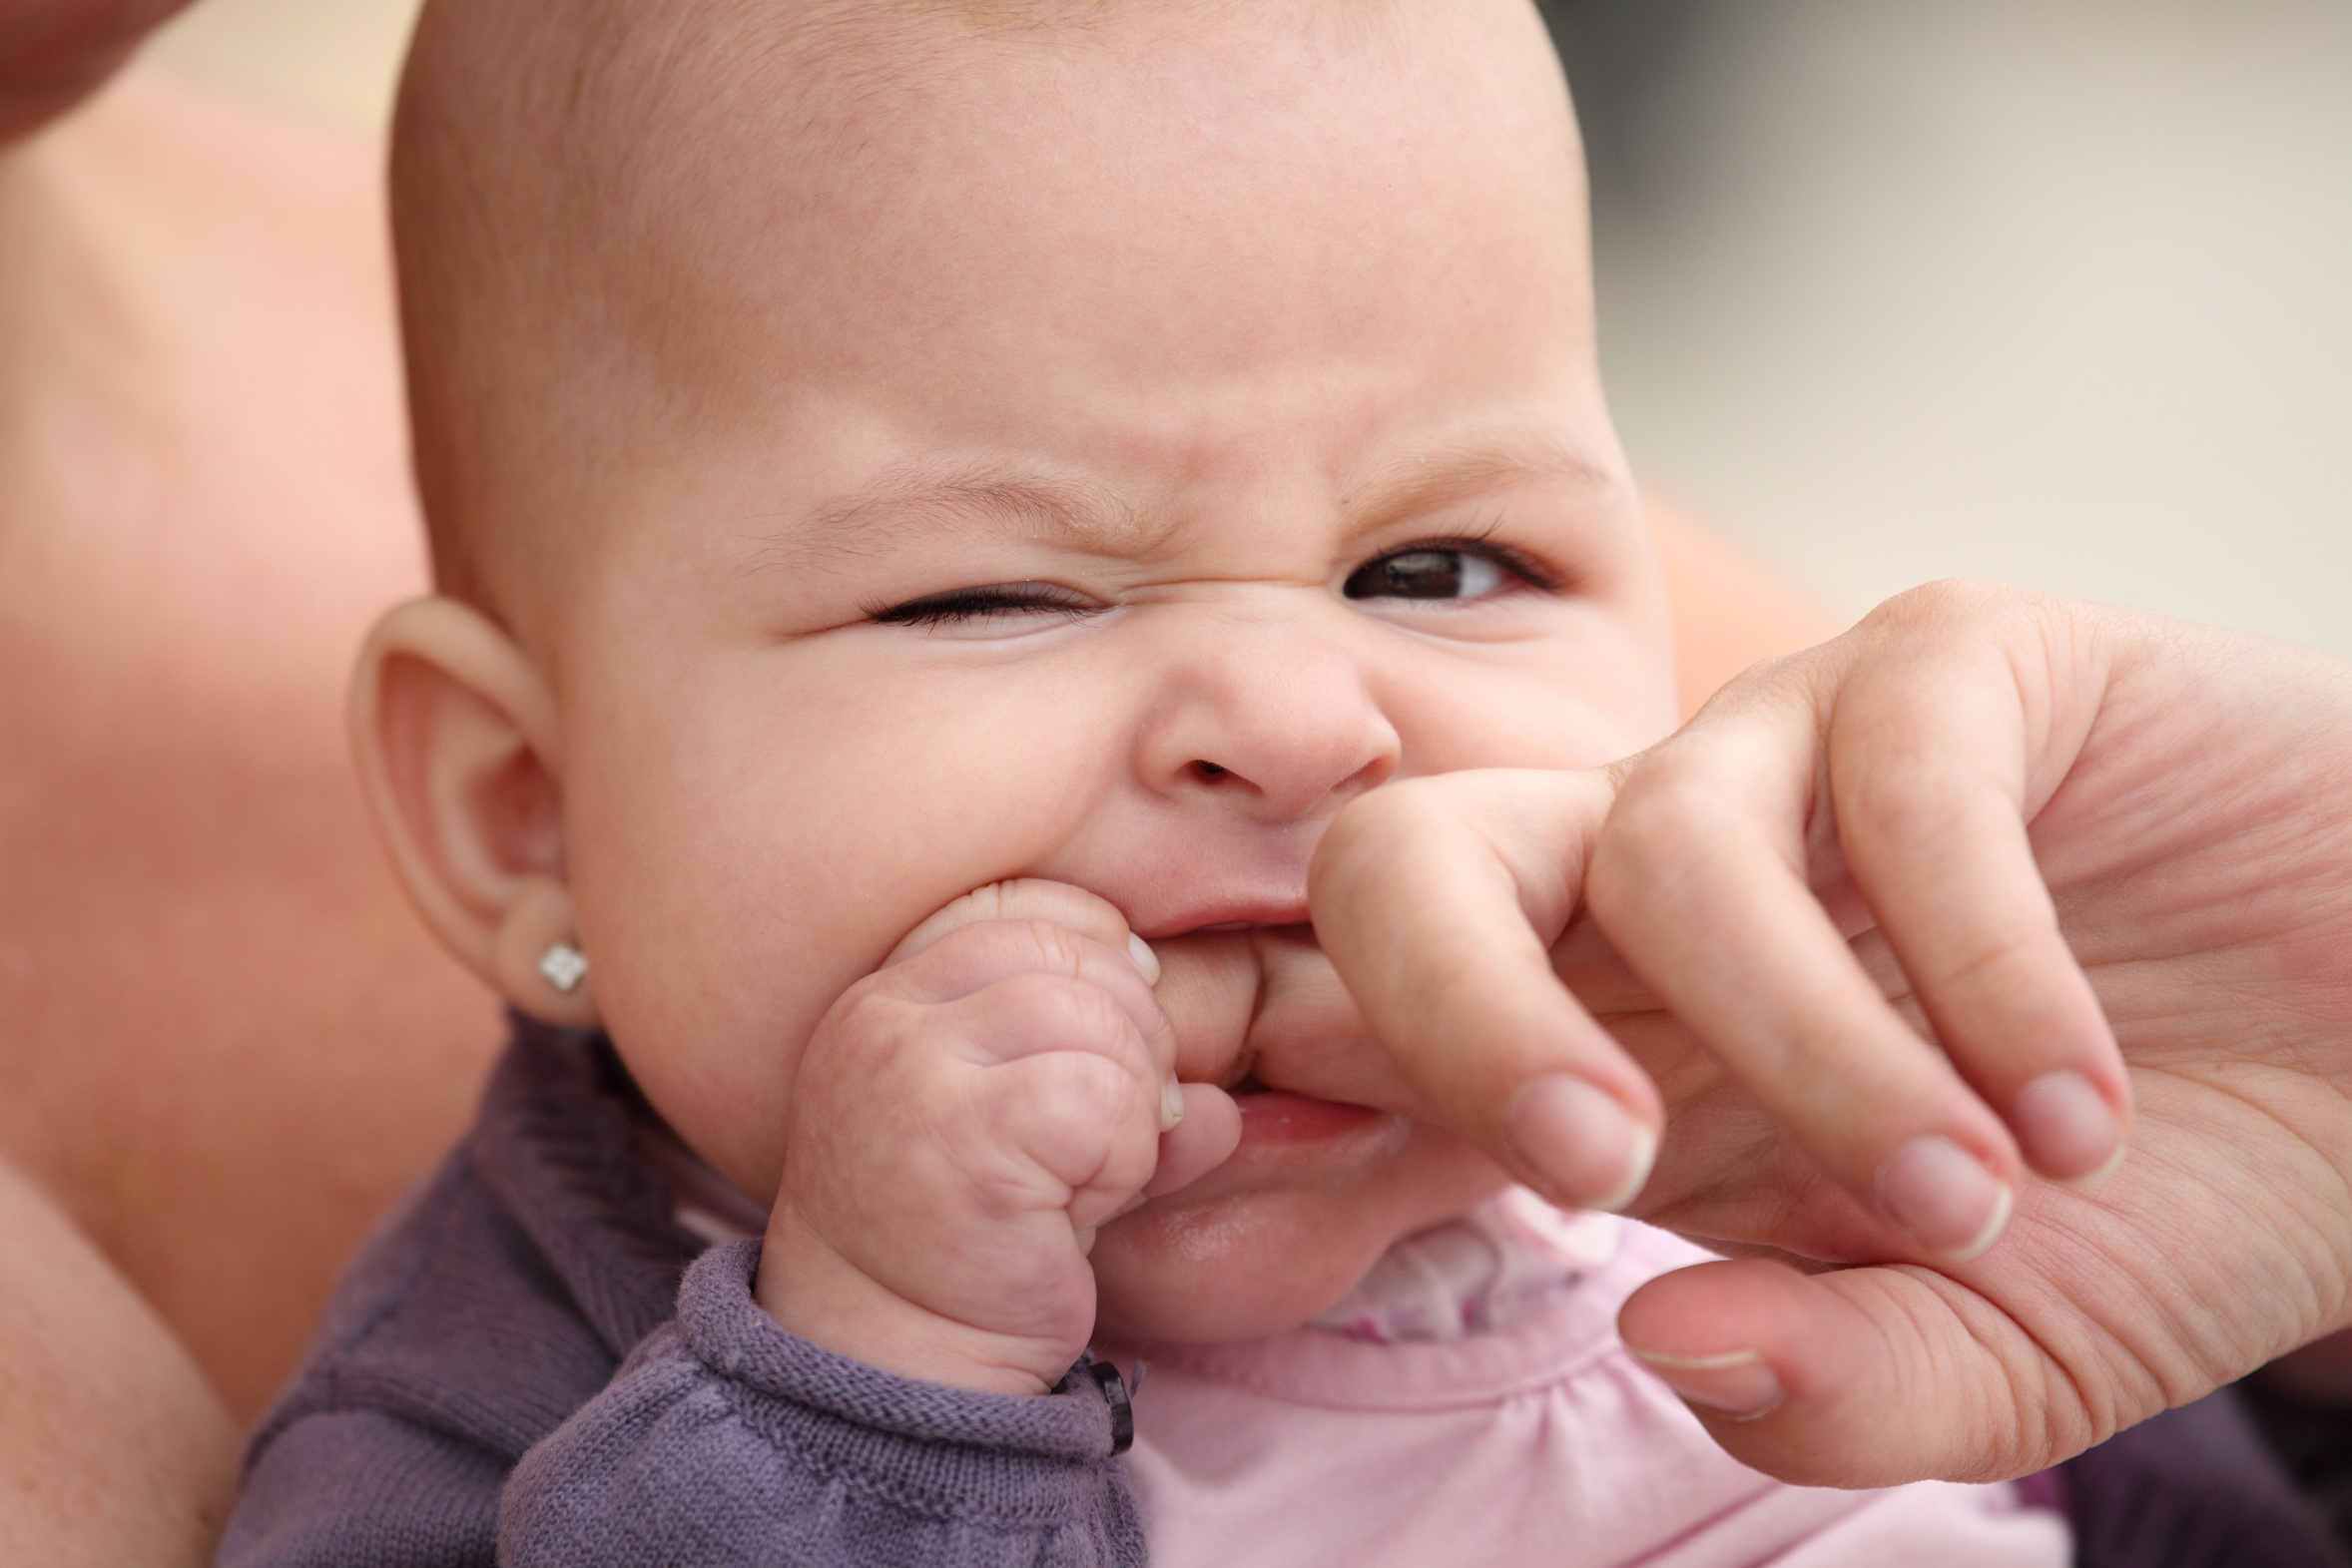 little baby biting her mother finger